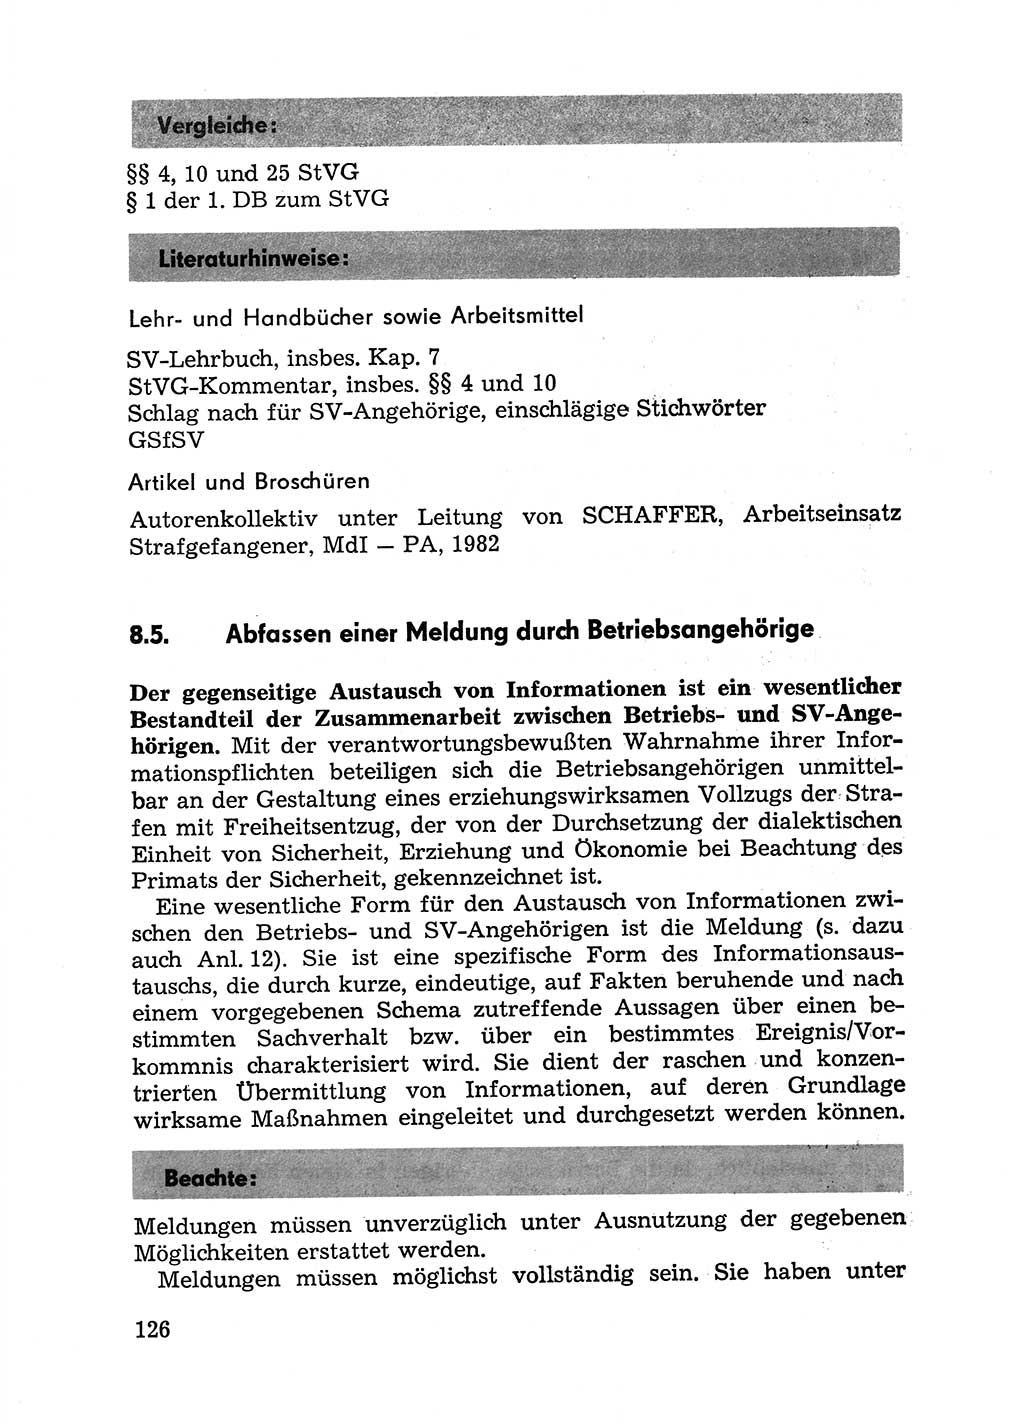 Handbuch für Betriebsangehörige, Abteilung Strafvollzug (SV) [Ministerium des Innern (MdI) Deutsche Demokratische Republik (DDR)] 1981, Seite 126 (Hb. BA Abt. SV MdI DDR 1981, S. 126)